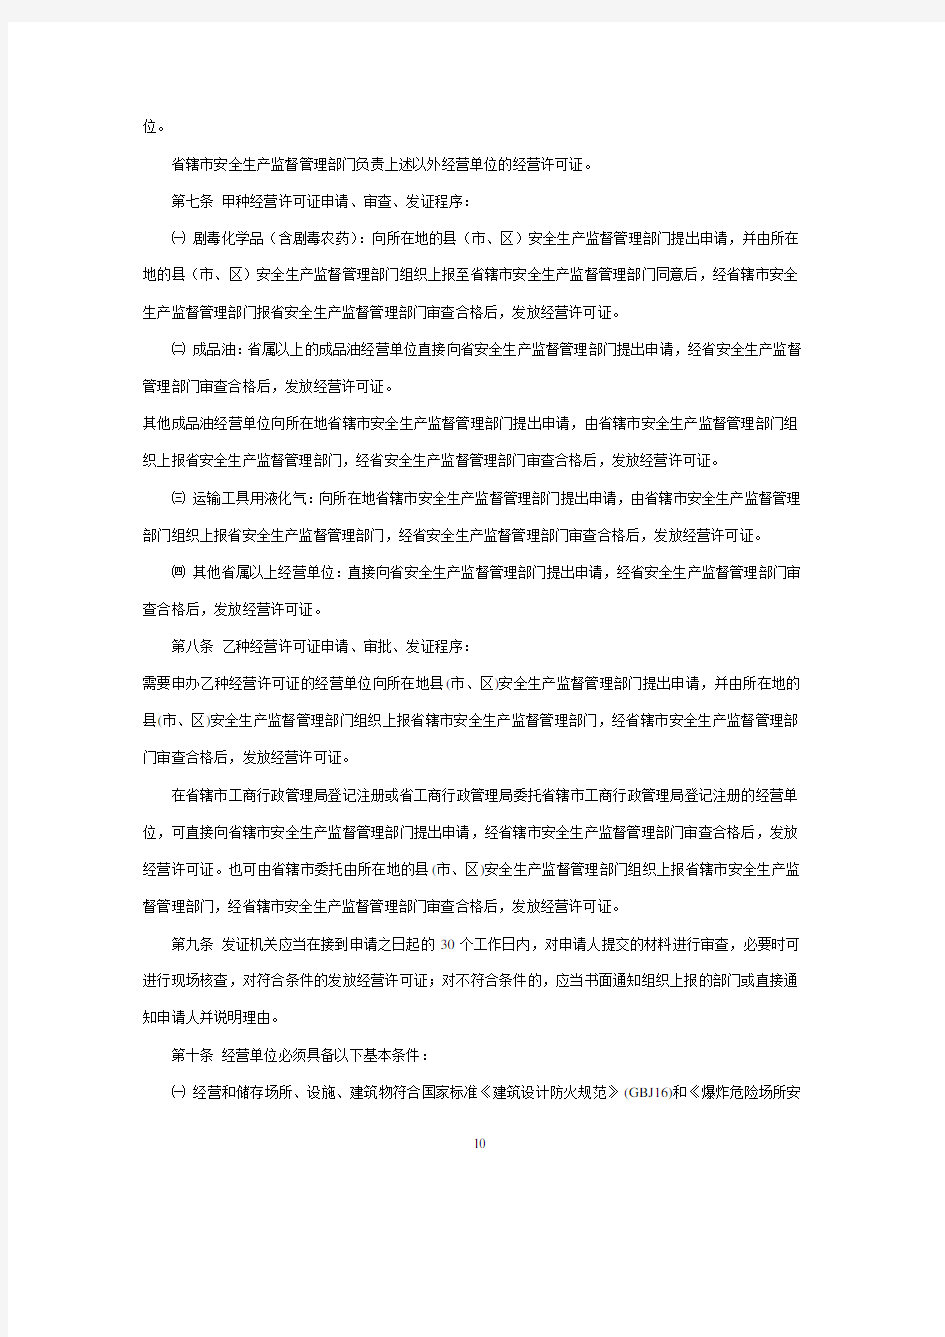 江苏省危险化学品经营许可证管理实施办法